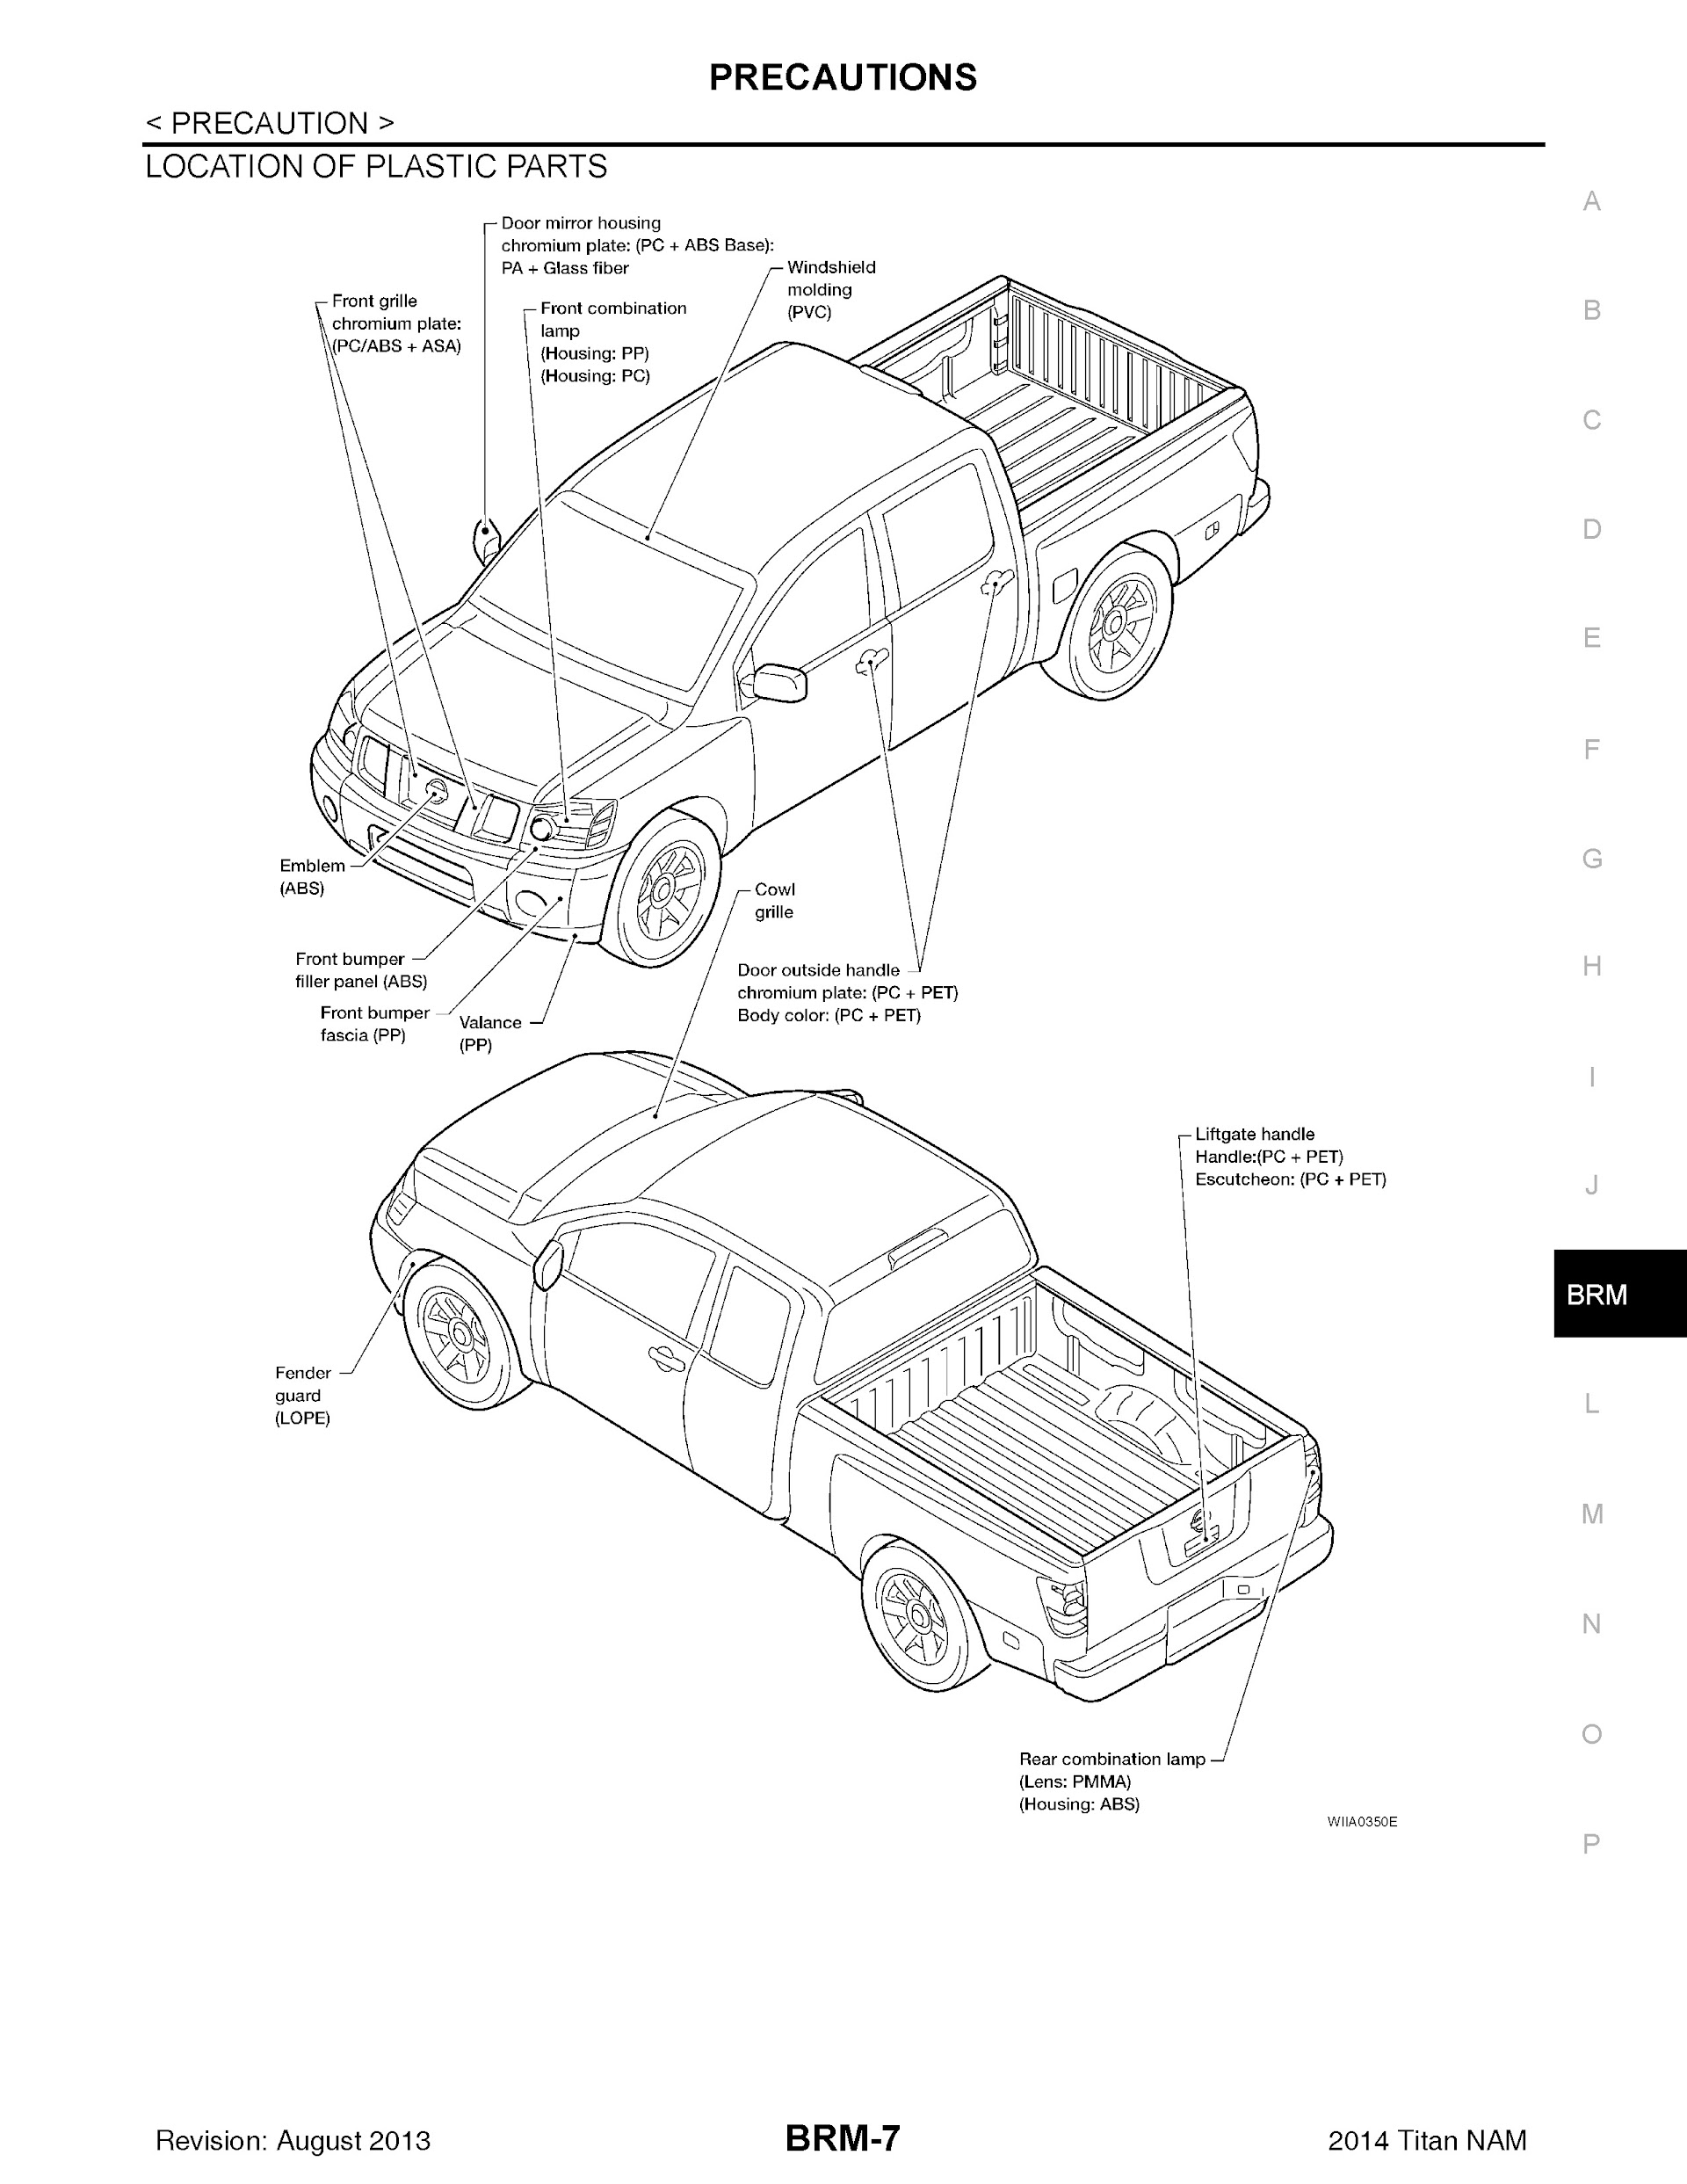 Download 2014 Nissan Titan Repair Manual.